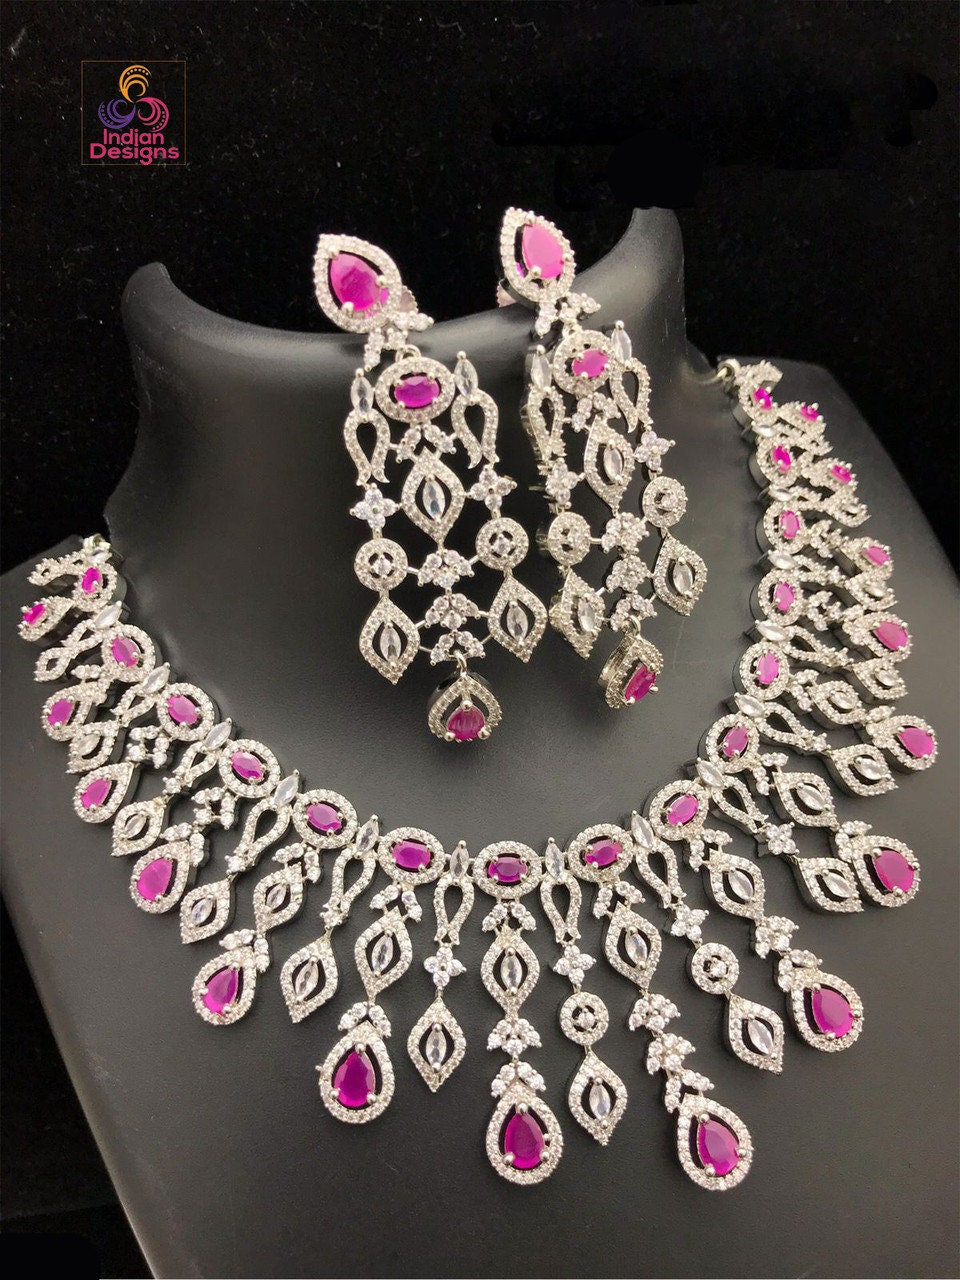 Grand Ruby Stone American Diamond Necklace in Silver tone